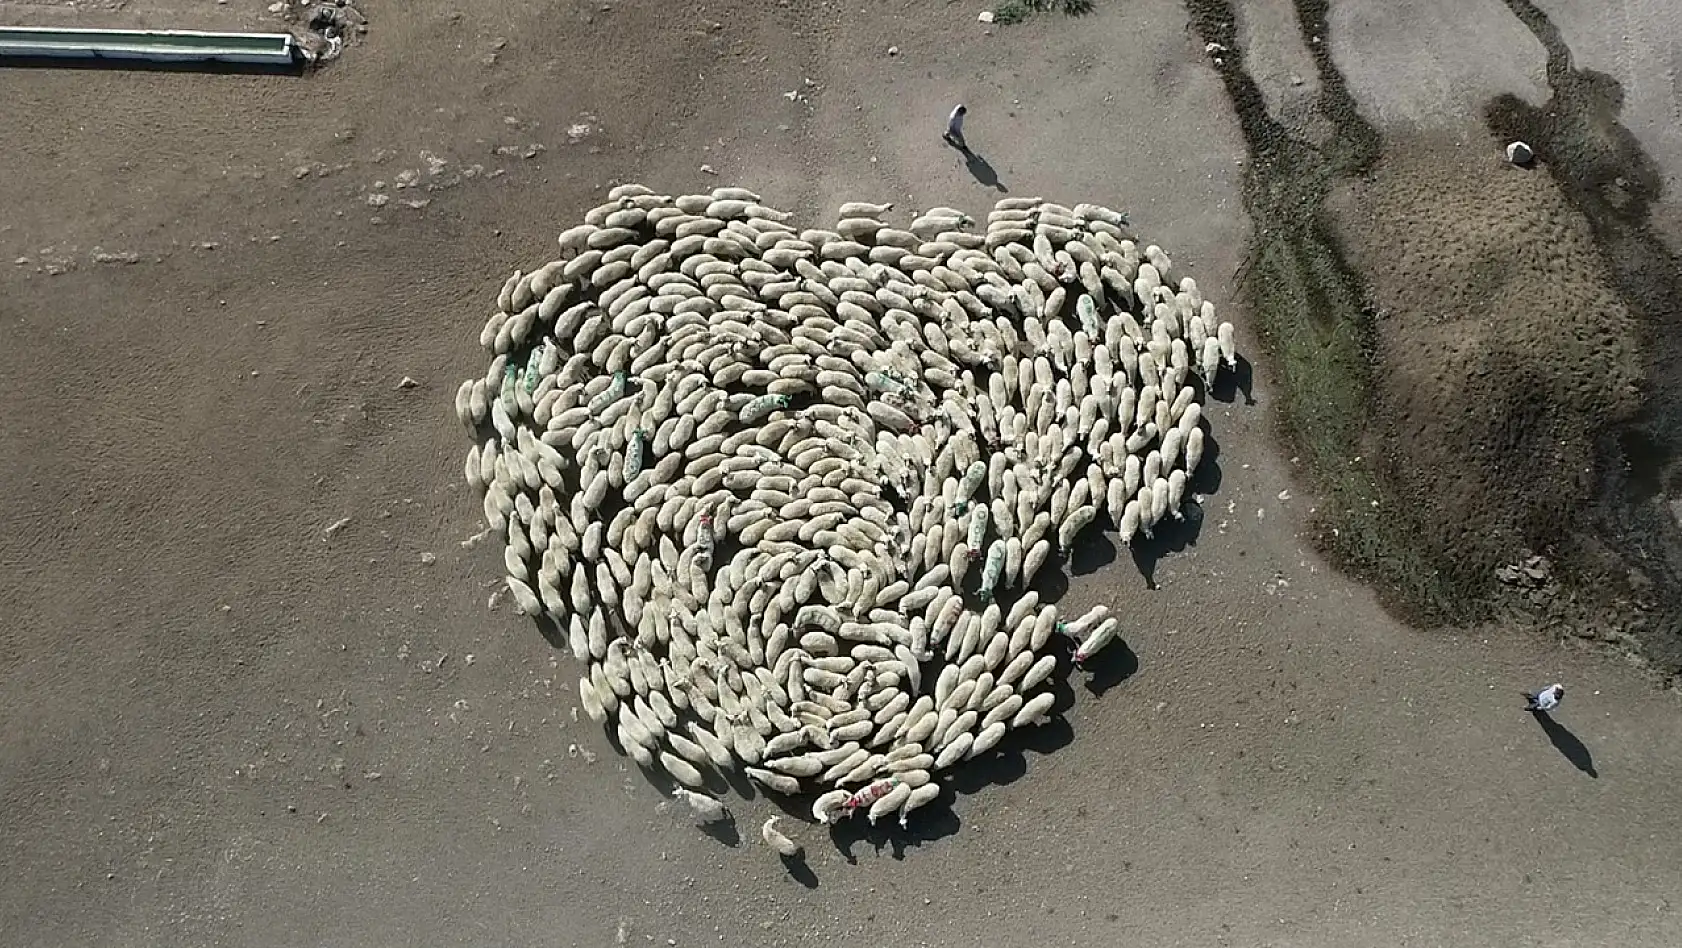 Koyun Sürüsü Durmadan Döndü Çin'deki Görüntüler Akıllara Geldi